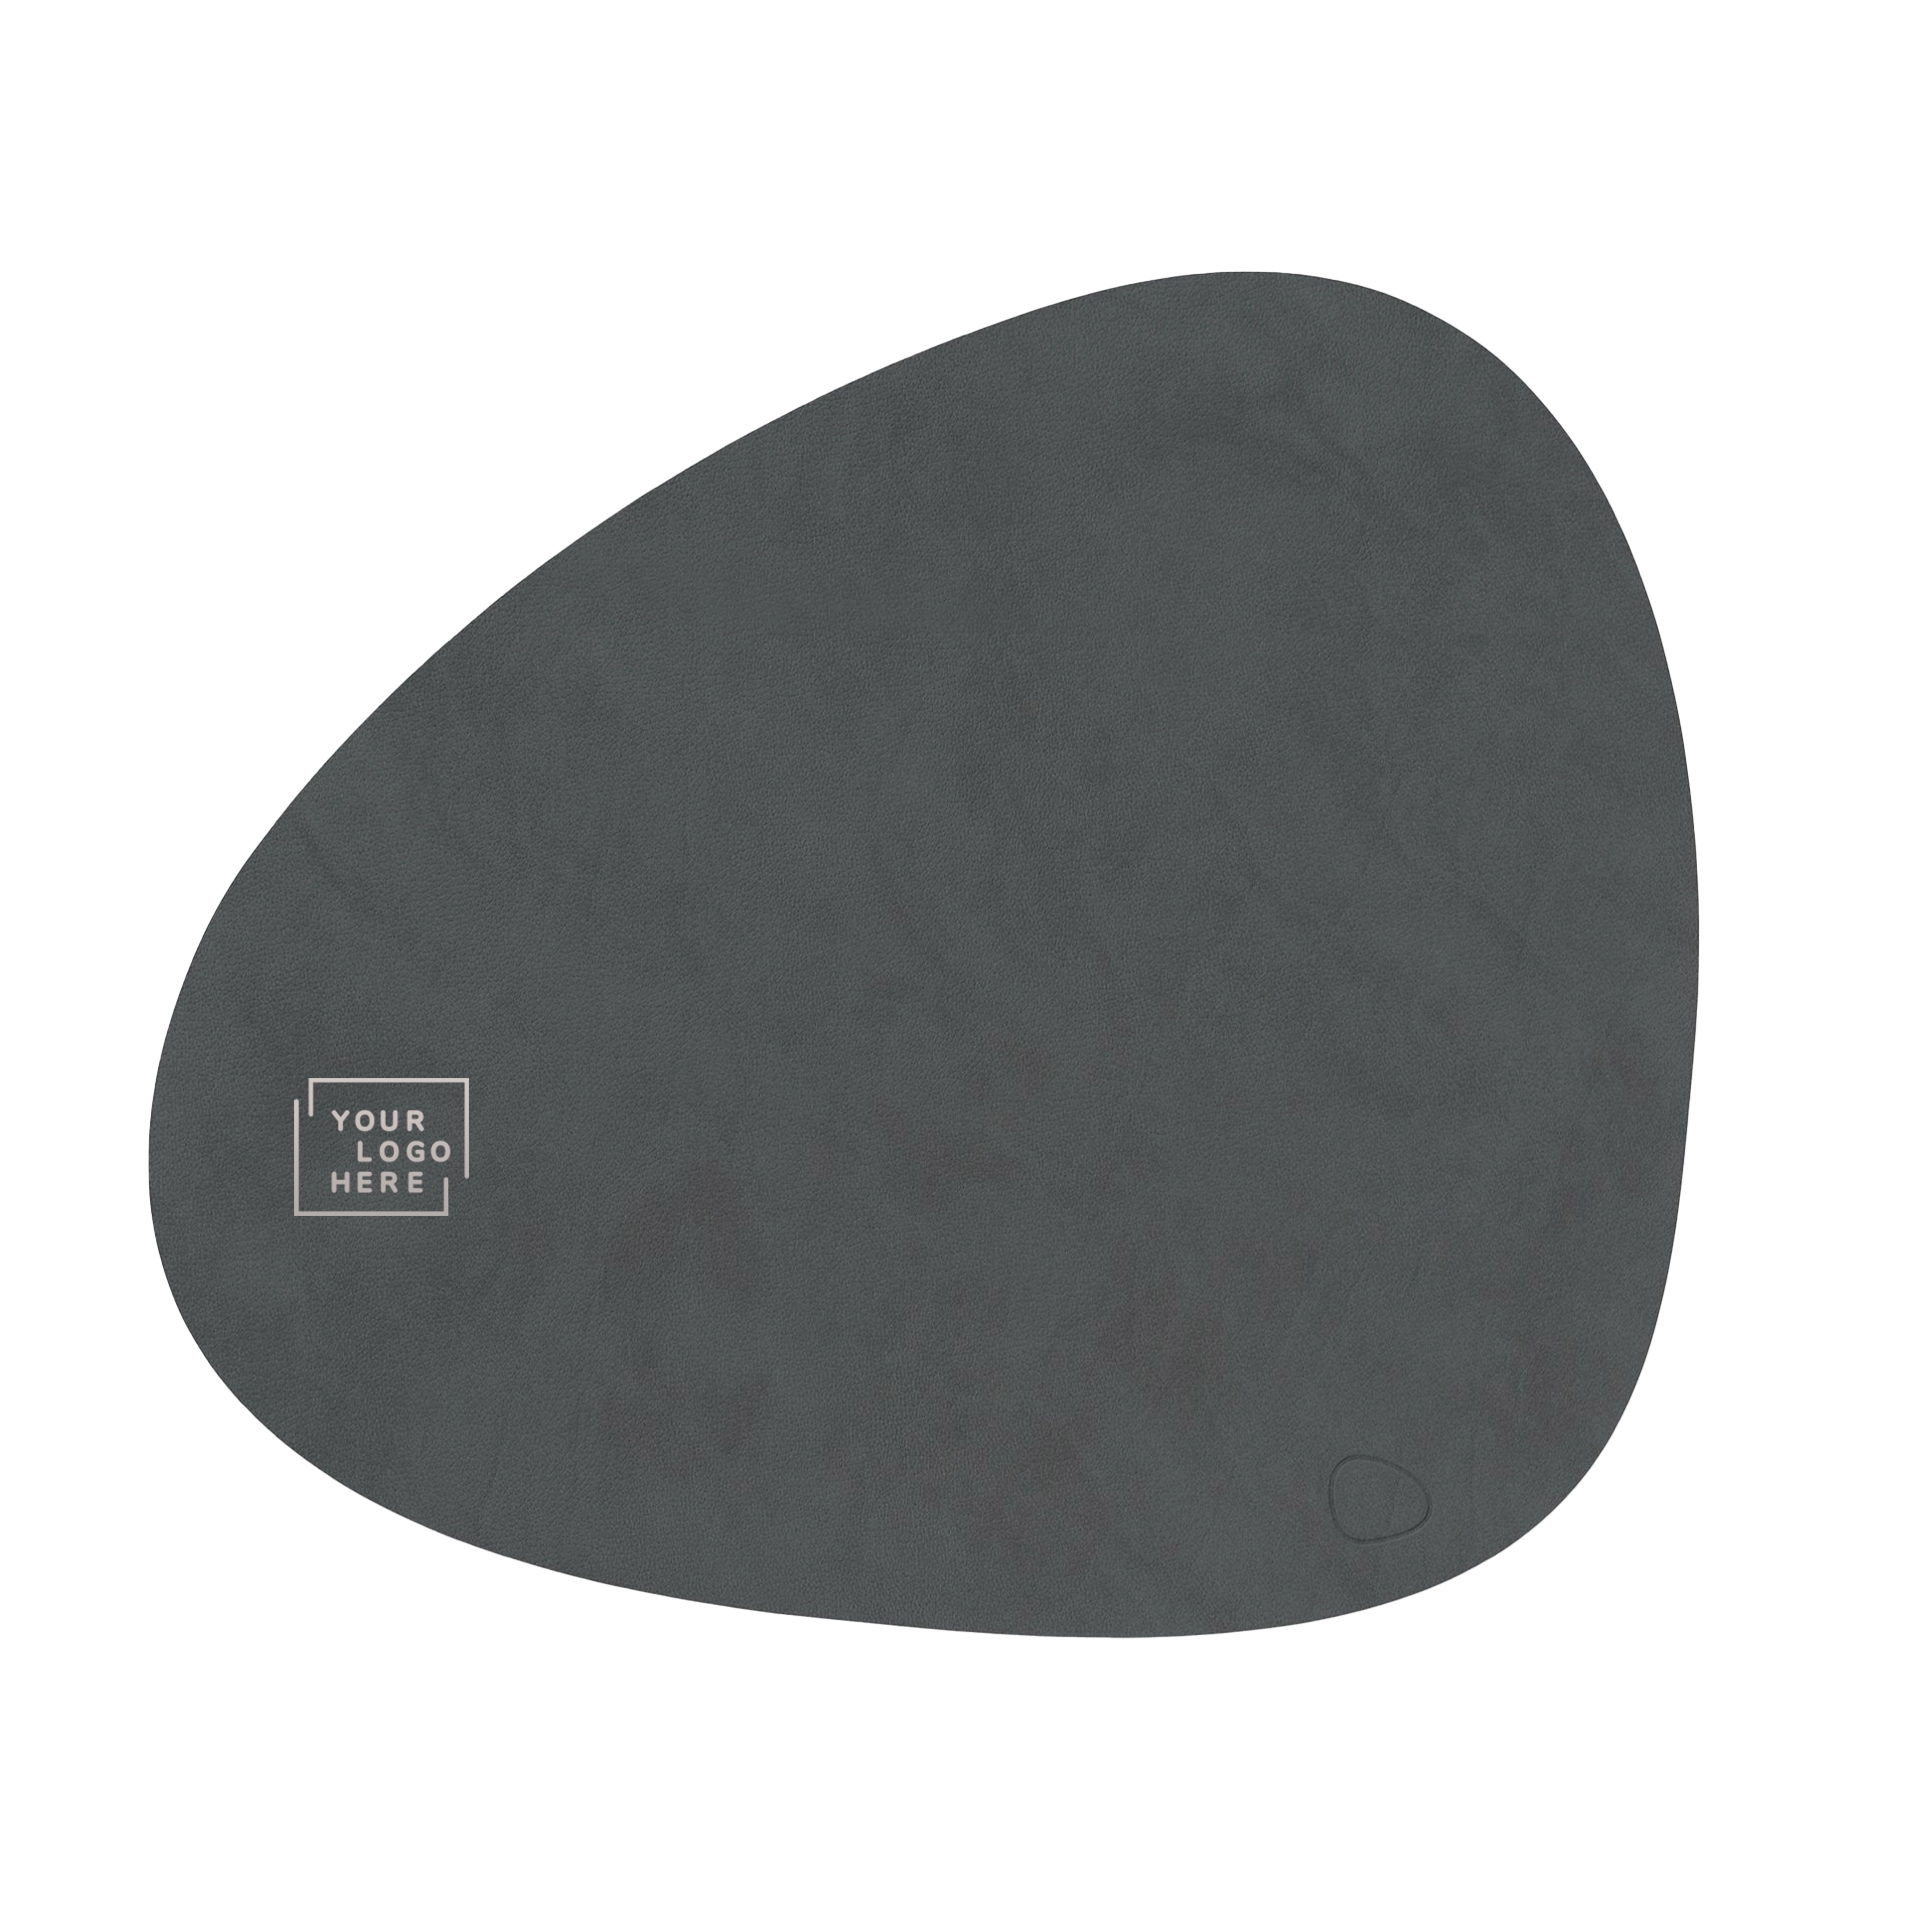 Tischset Lind Curverecyceltes LederNupo Farbe laut Farbfächer37x44 cm | 1,6 mm1 farbig bedrucktPrägung weiß,hellgrau,schwarz,dunkelbraun,gold,silber,bronzeMin.: 30 Stk    